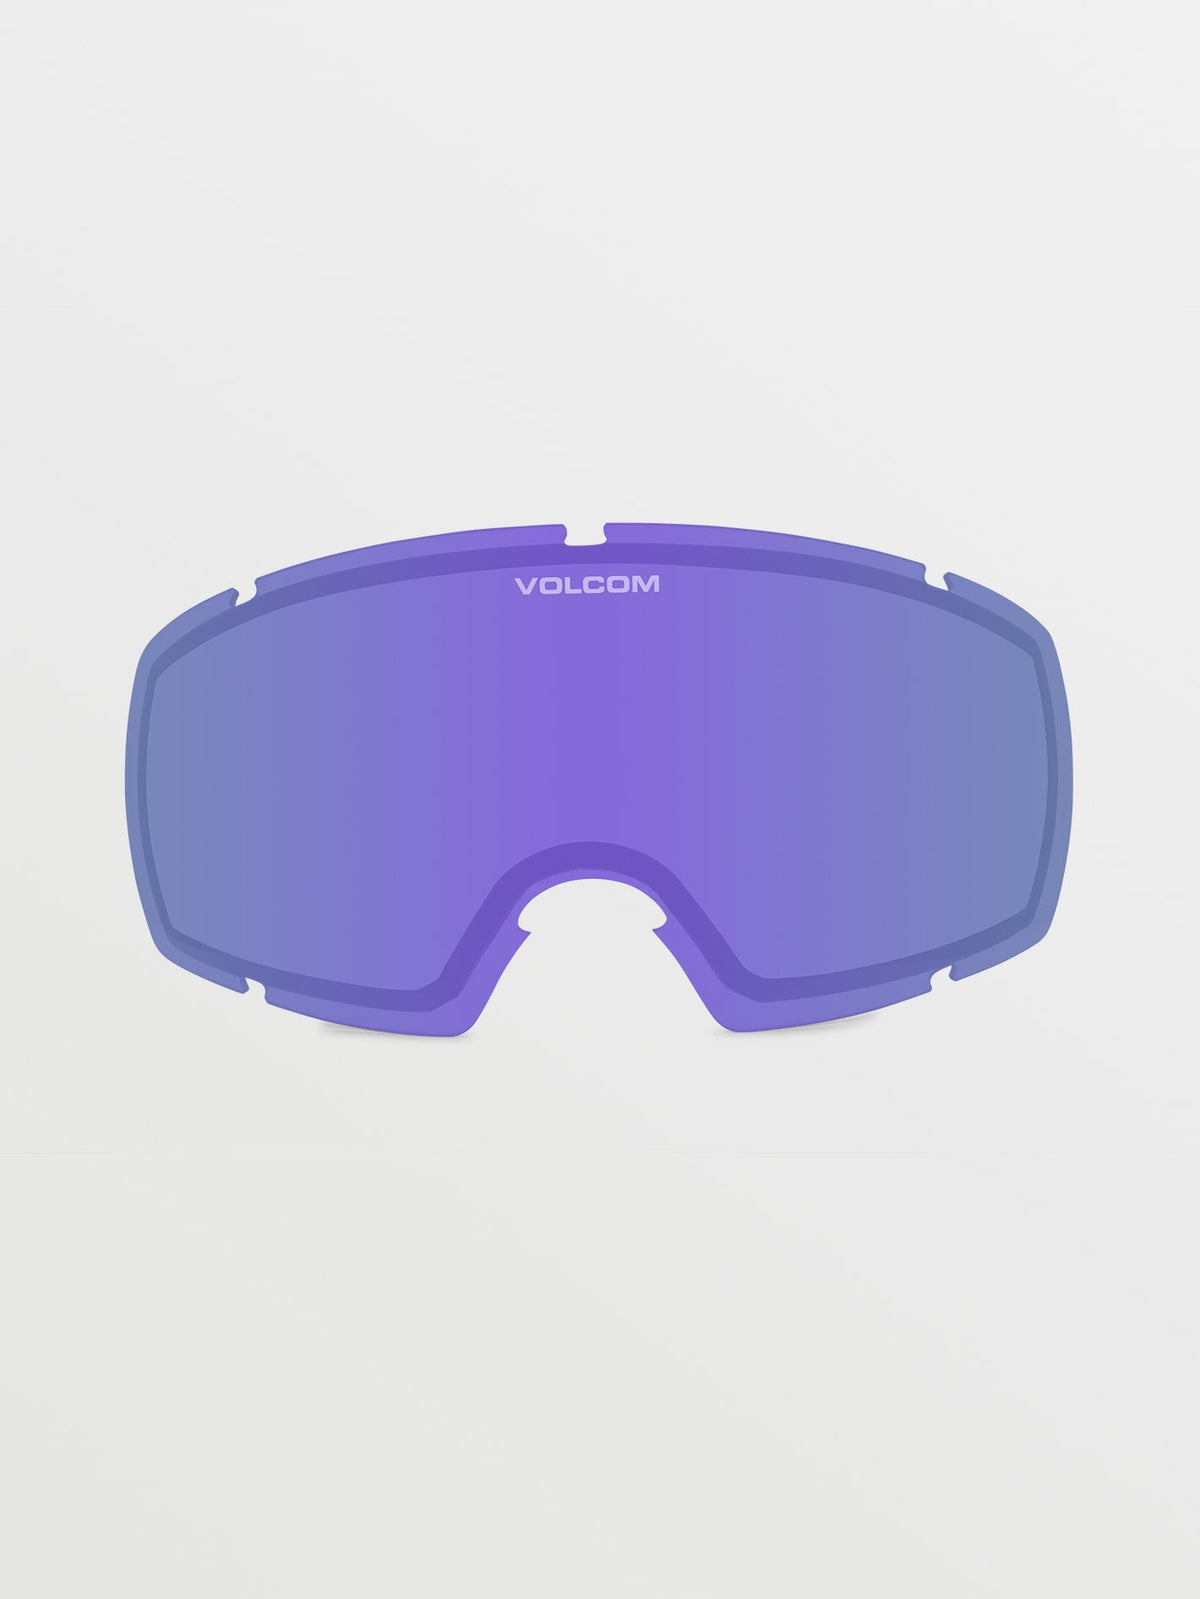 Volcom Migrations Lens Purple Chrome